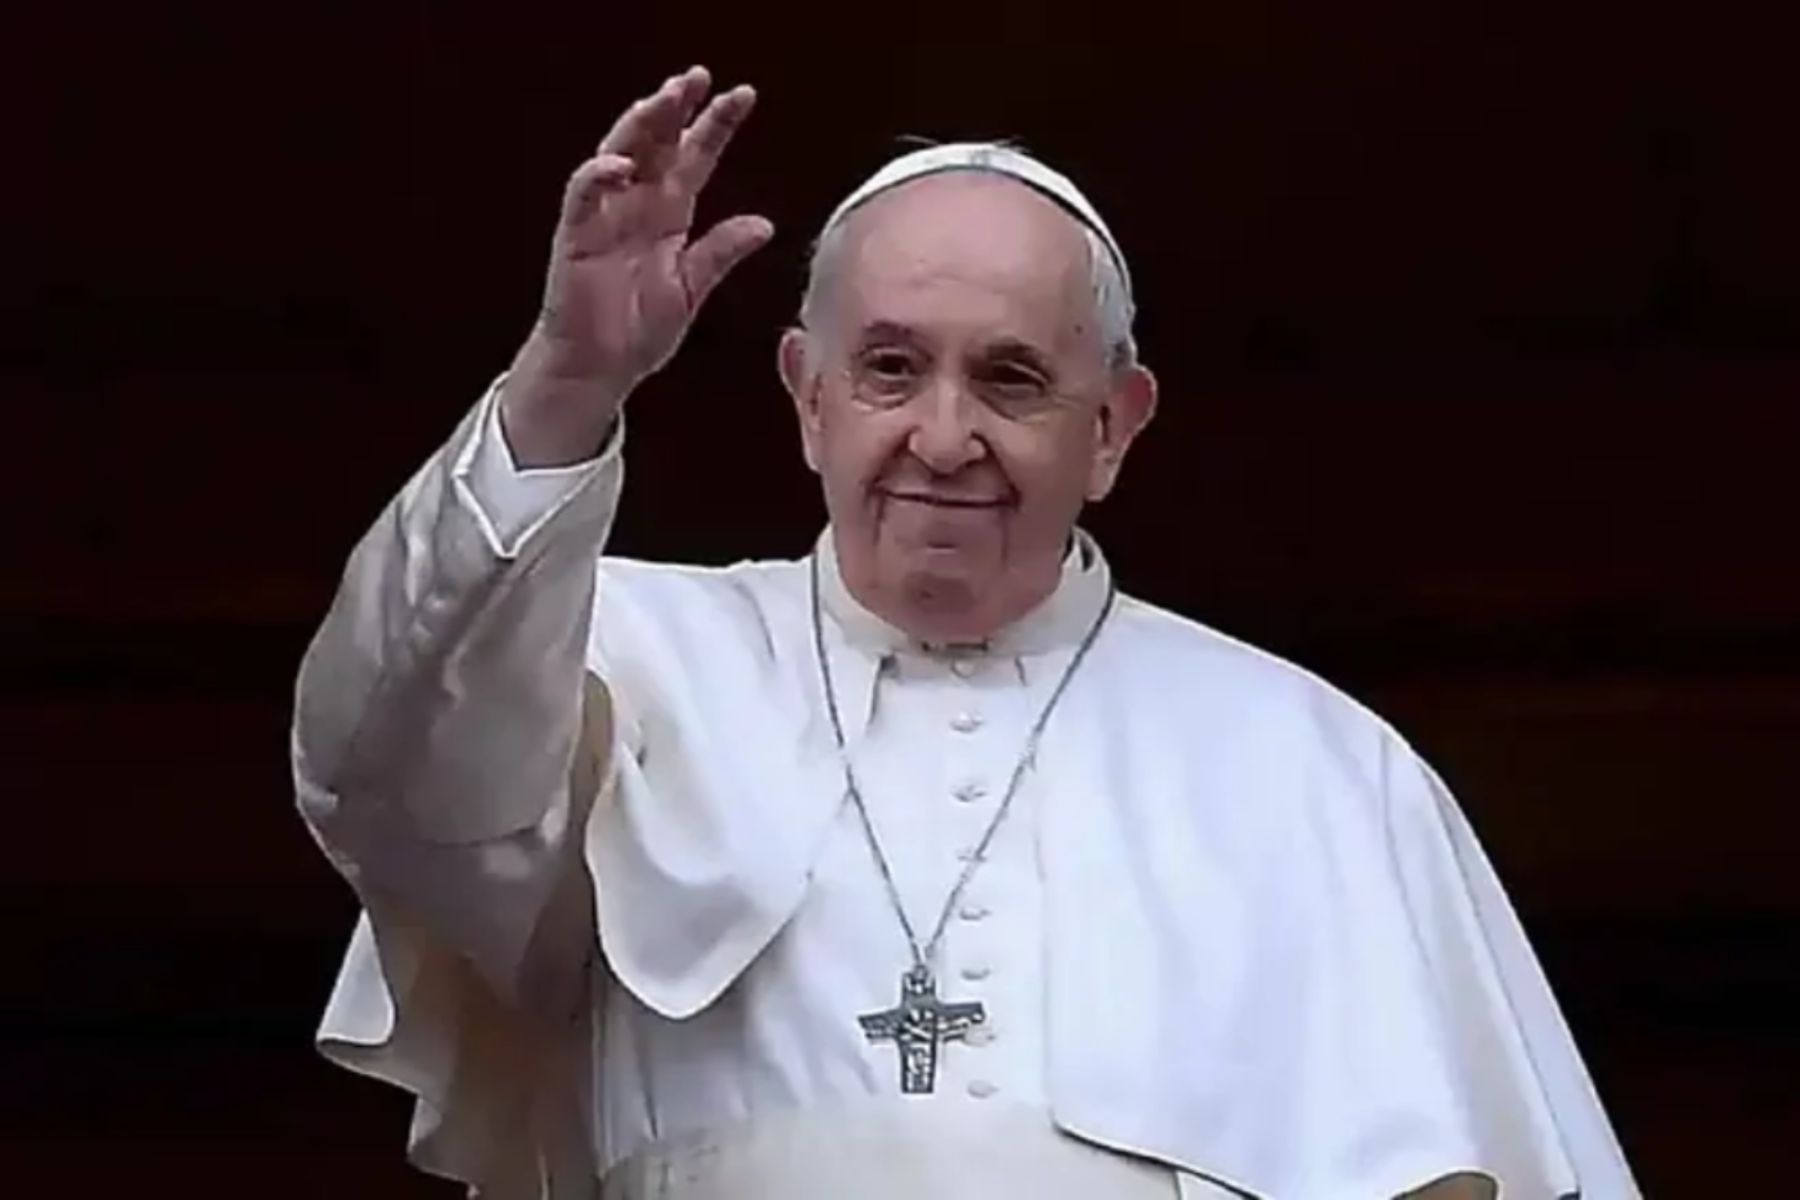 El verdadero encuentro con Jesús trae alegría, dice el Papa Francisco